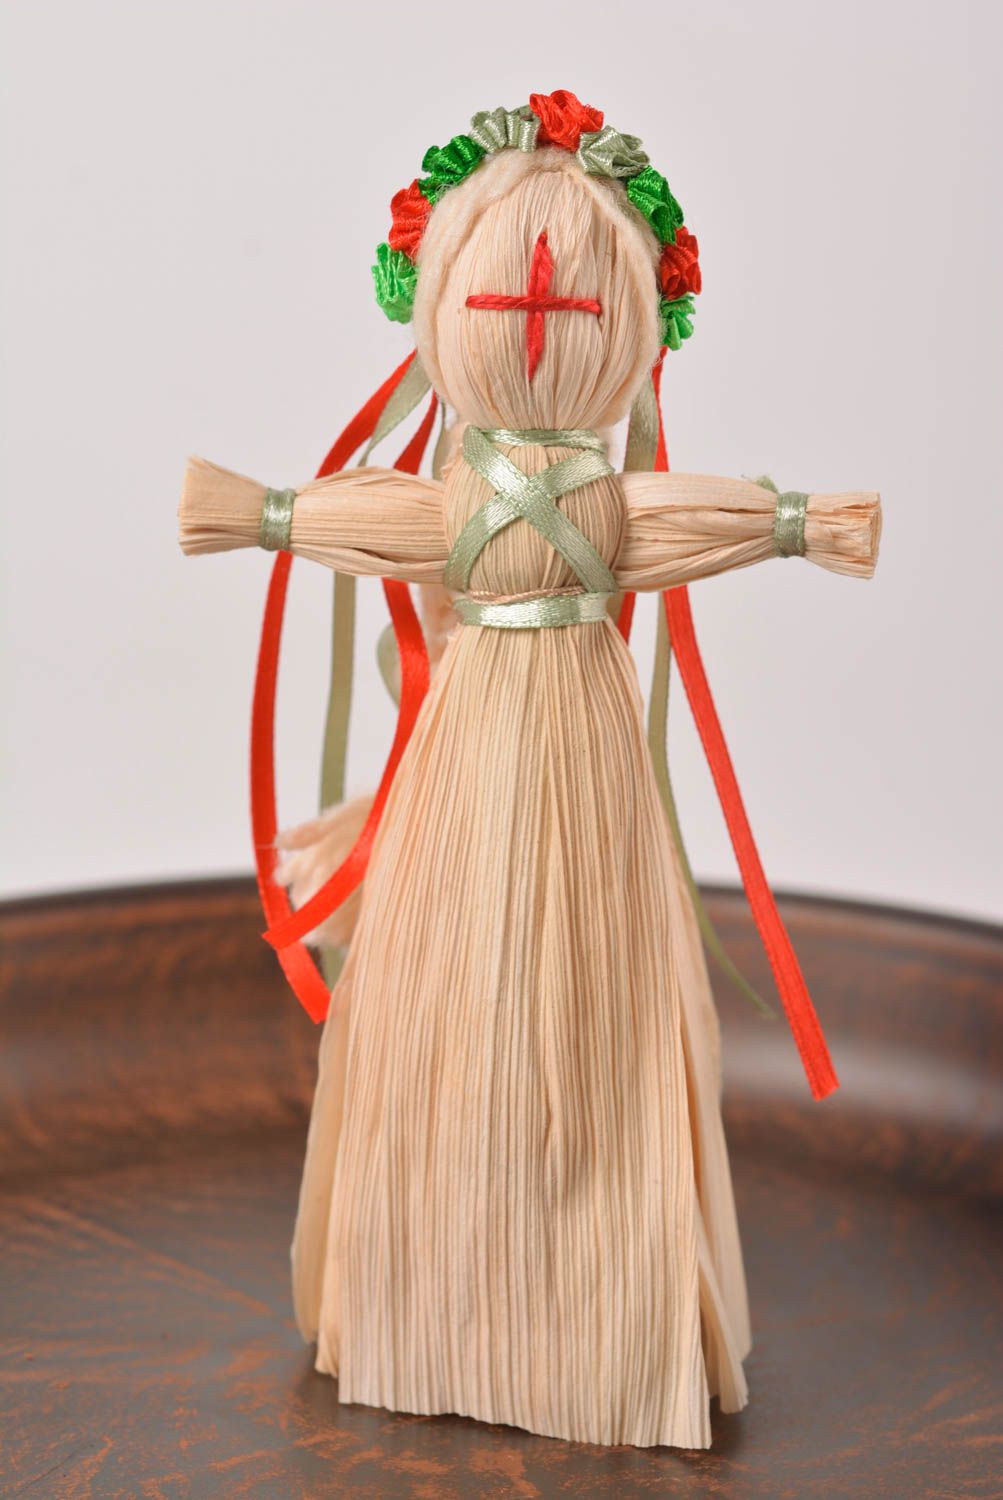 Игрушка из соломы хэнд мэйд славянский оберег кукла из соломы без лица фото 1